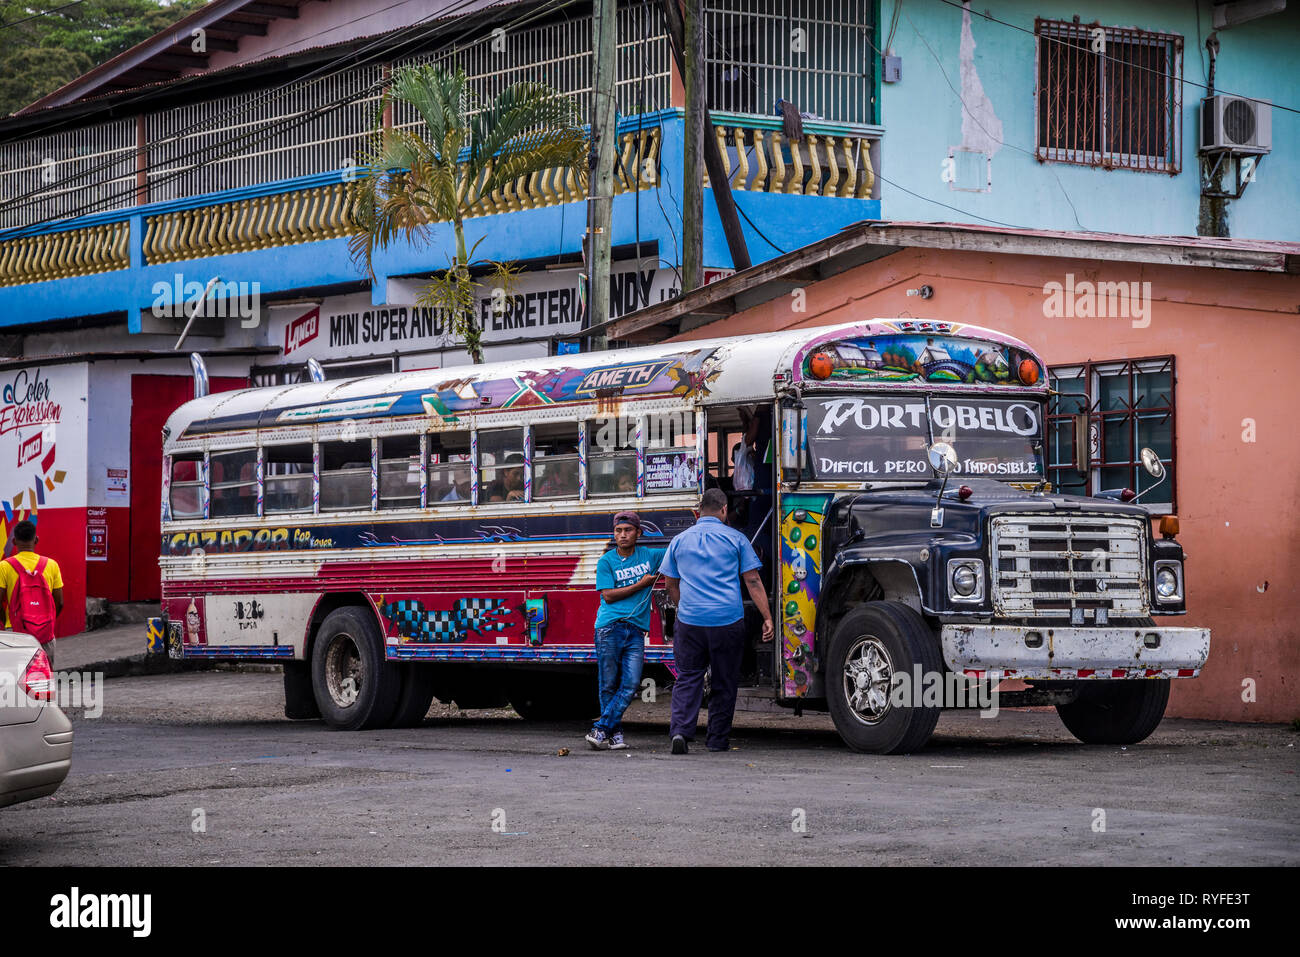 Diablo Rojo bus dans Portobelo, Panama, Colon Provnce Banque D'Images